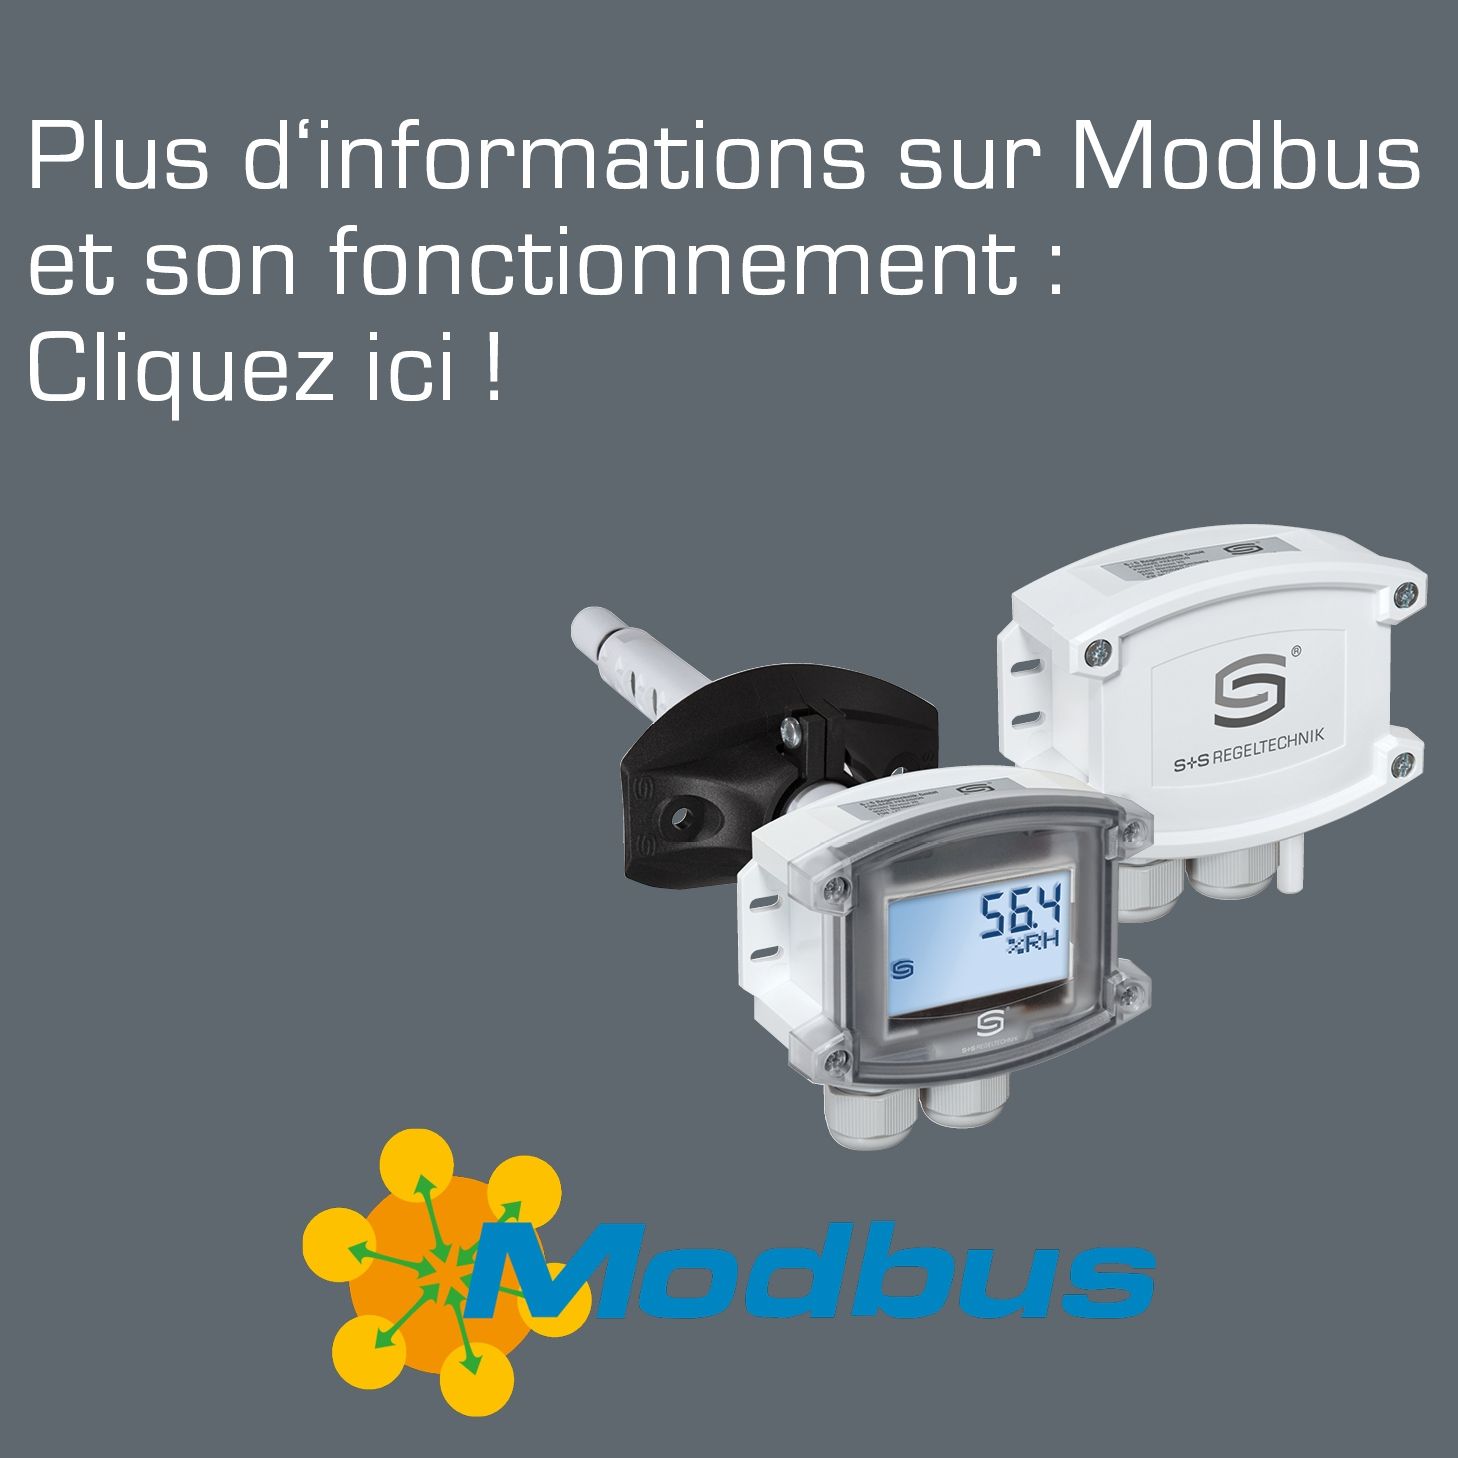 Banner Header Plus d'informations sur Modbus. Logo Modbus sur le côté droit et deux capteurs S+S avec Modbus au centre de l'image.